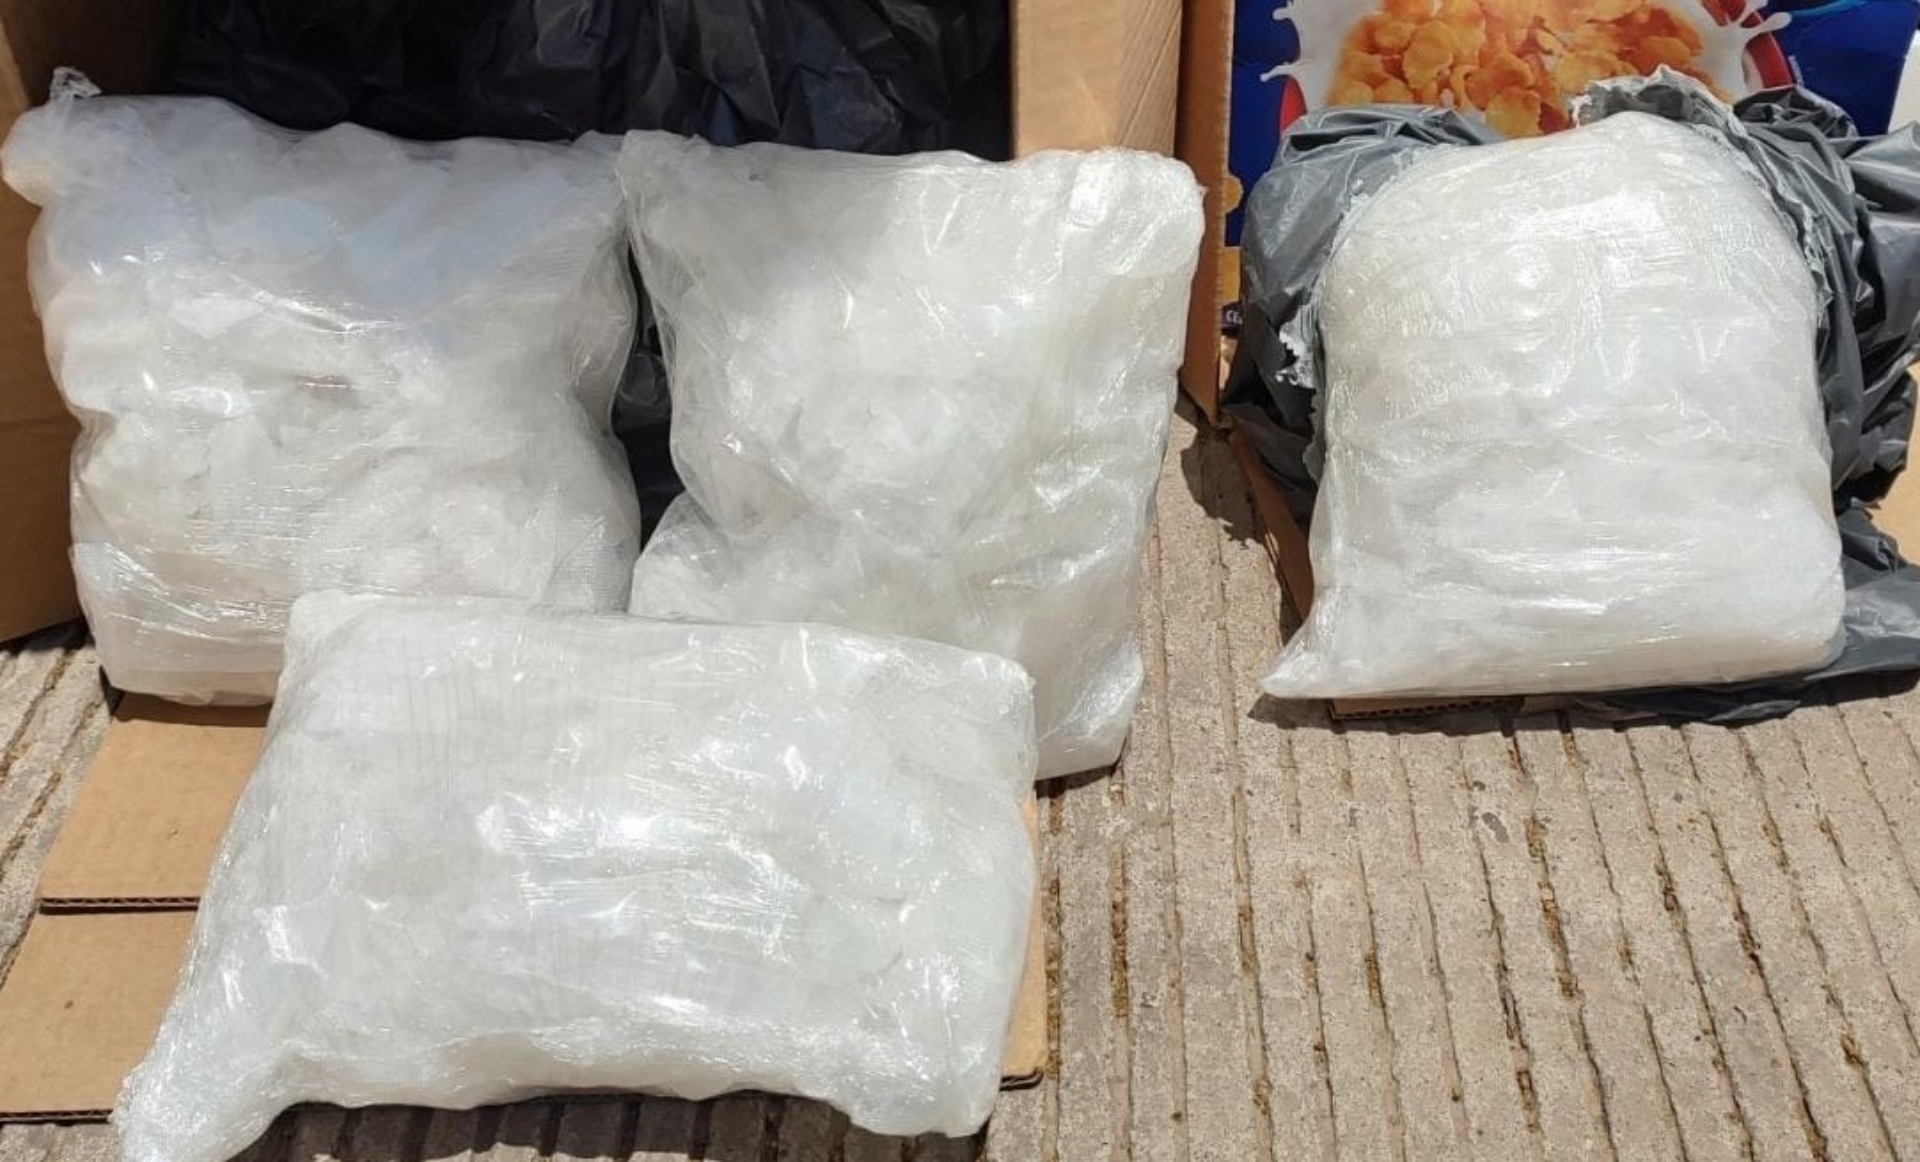 Cristal oculto en cajas de cereal fue asegurado en Sinaloa